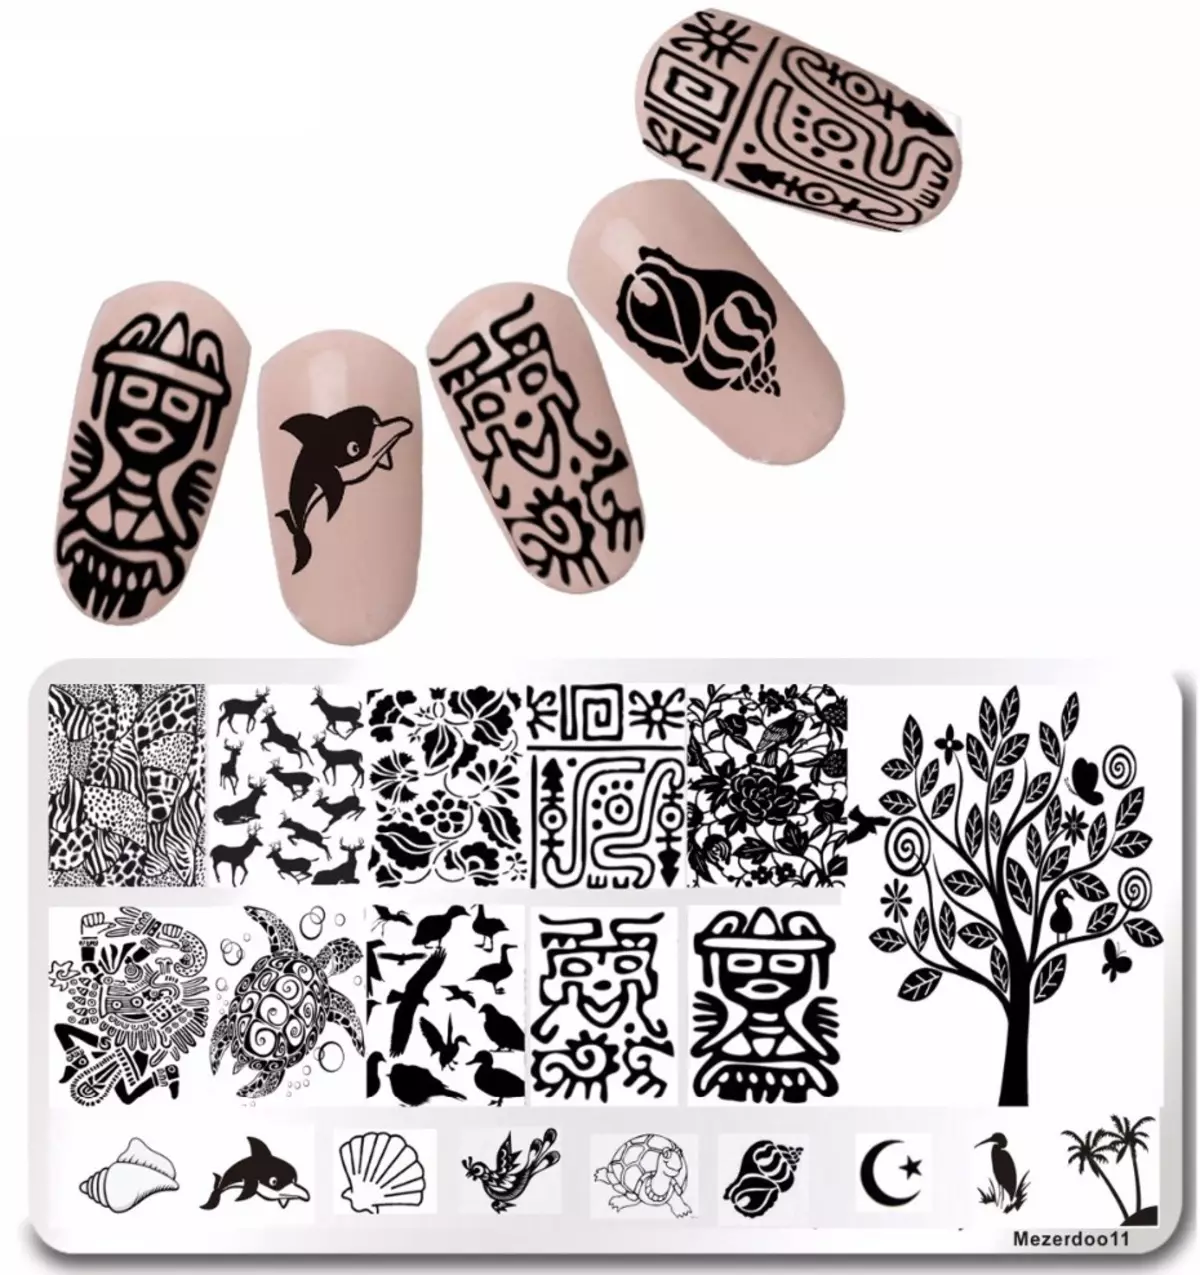 钉子象形文字（42张照片）：修指甲设计与象形文字的想法 6456_40